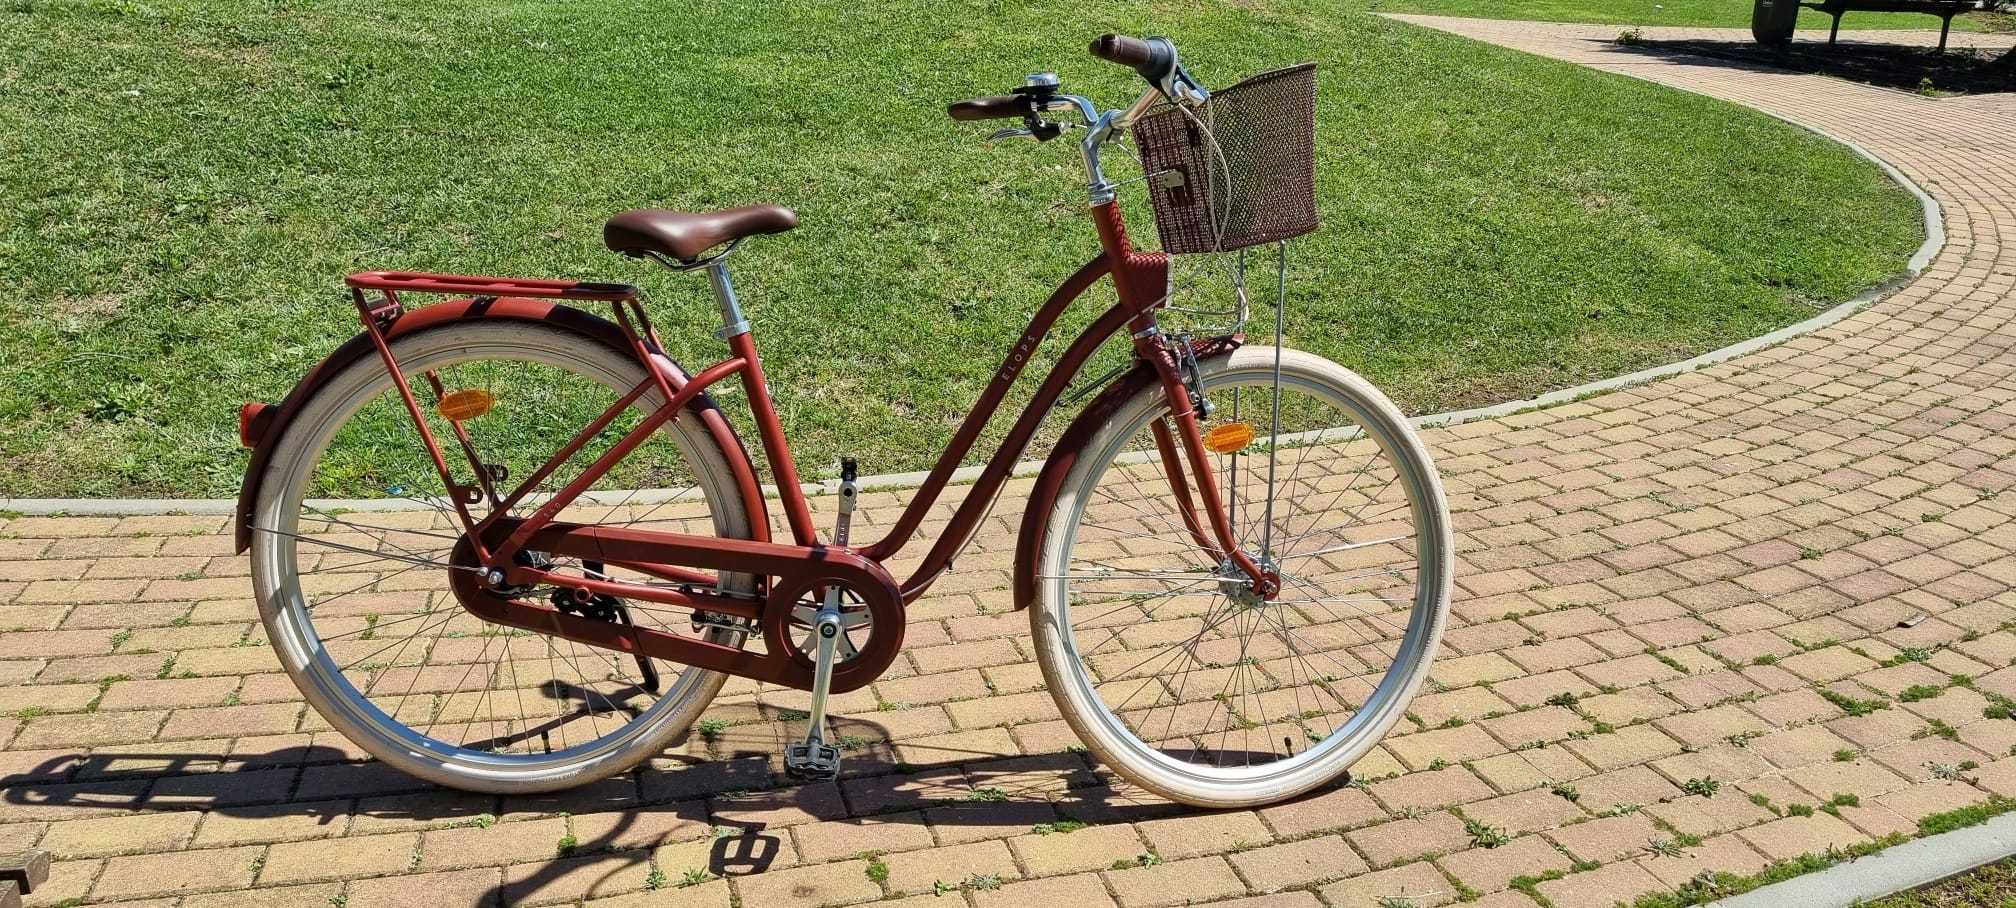 Bicicleta de Cidade Elops 540 como nova (< 1 ano; garantia; seguro)